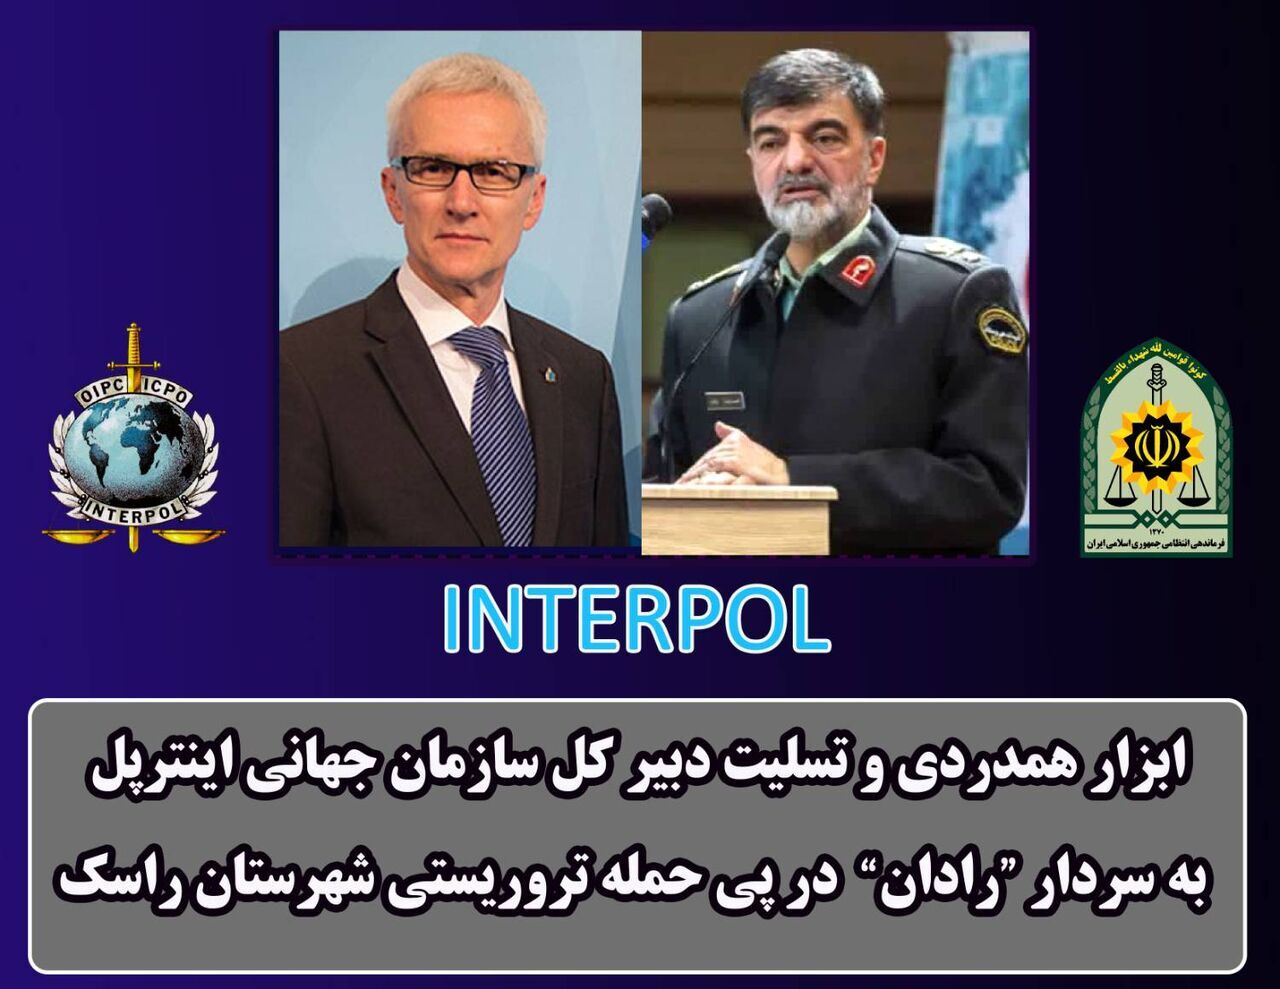 Interpol condamne fermement l'attaque terroriste contre un siège de police à Rask